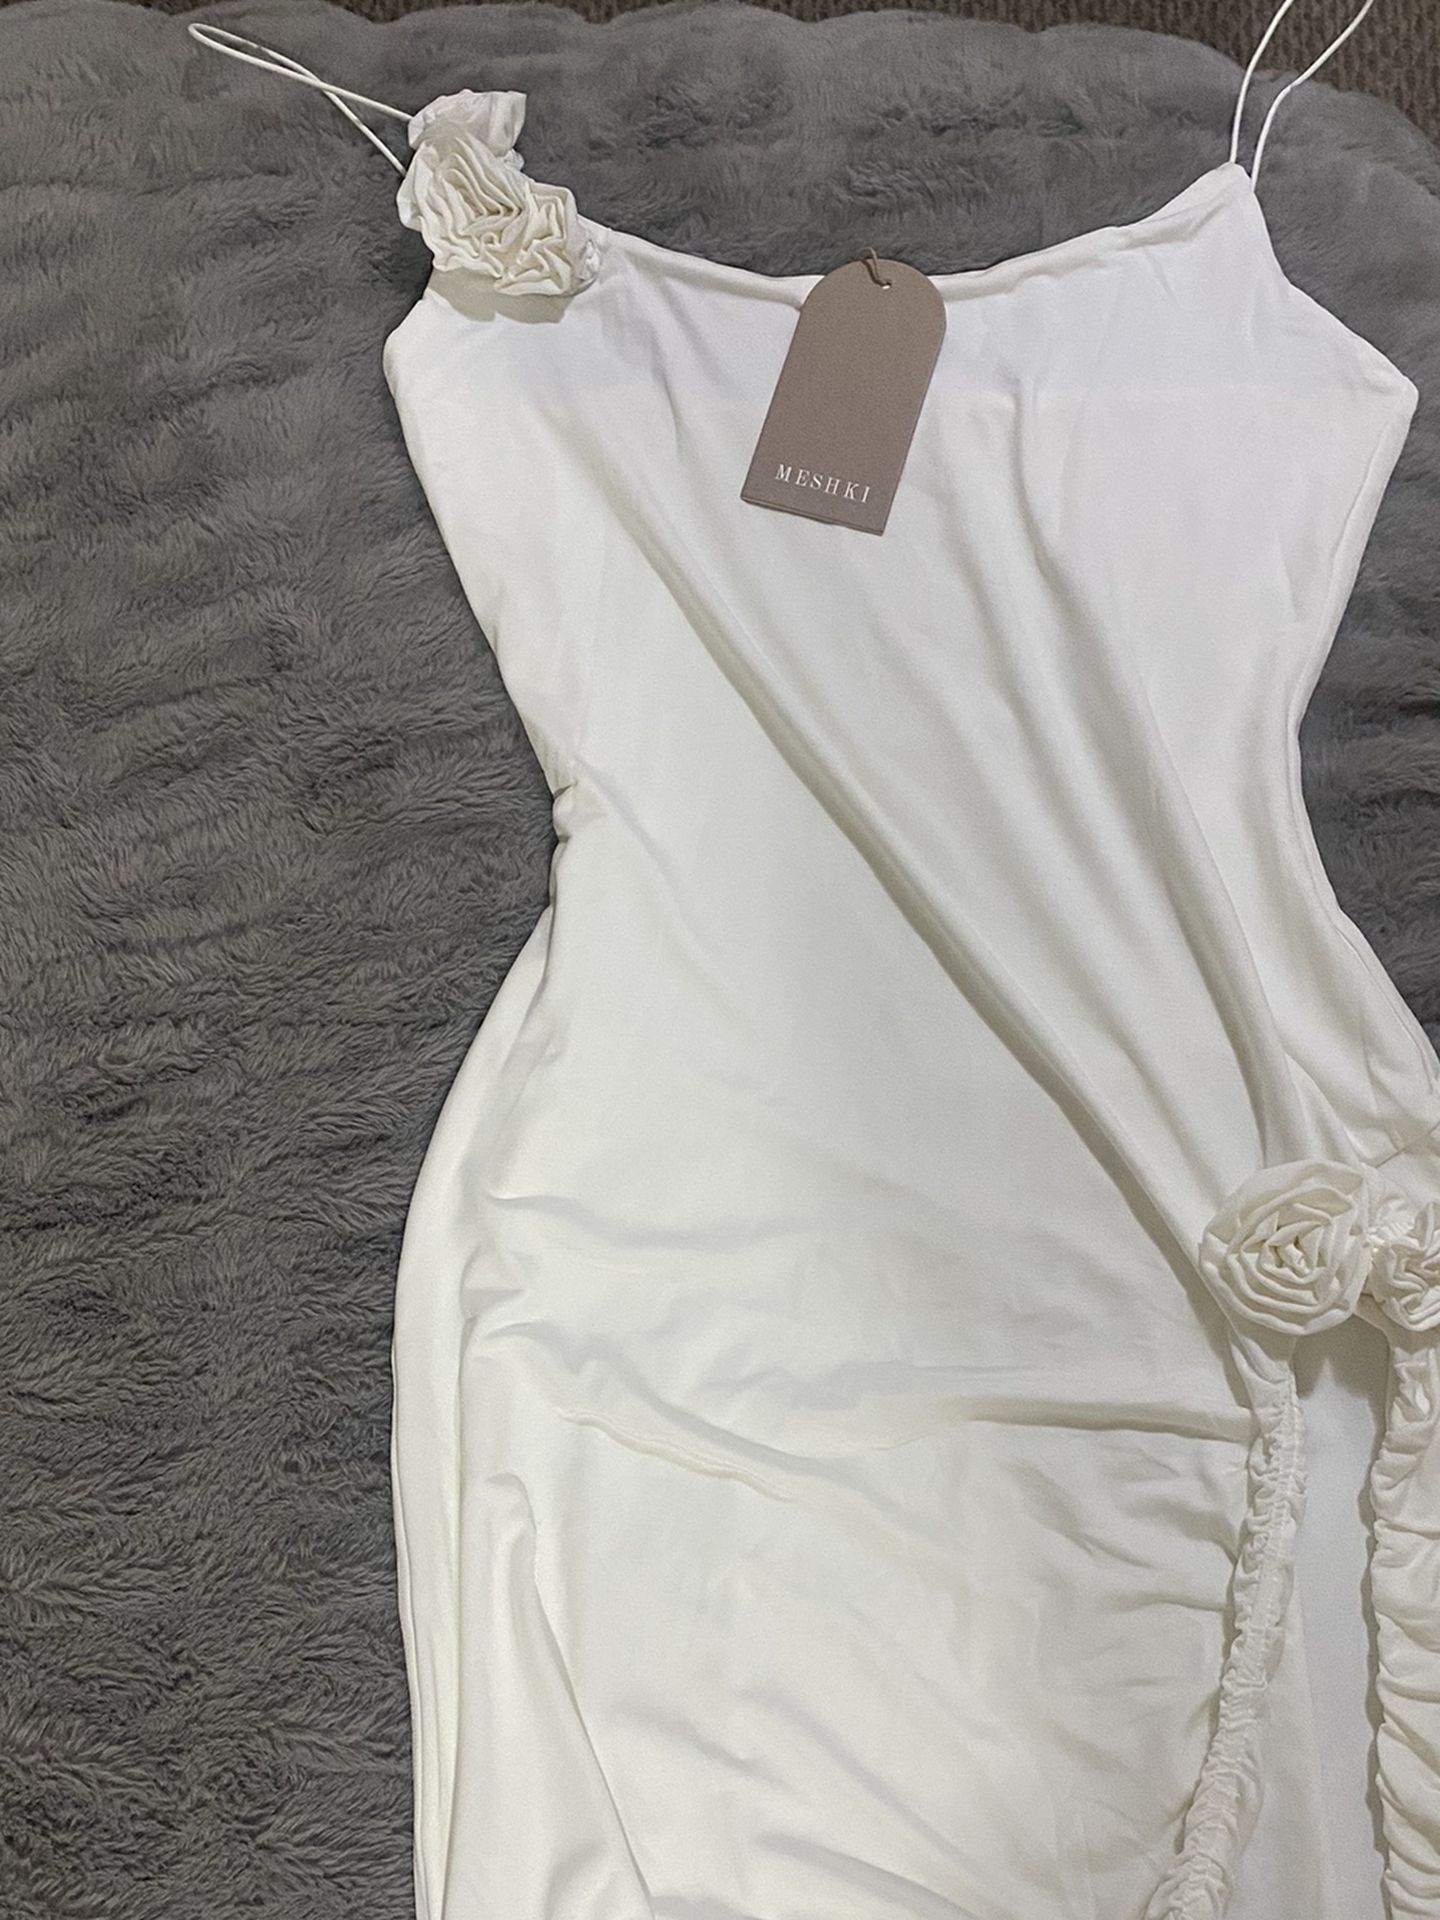 Meshki white Dress 